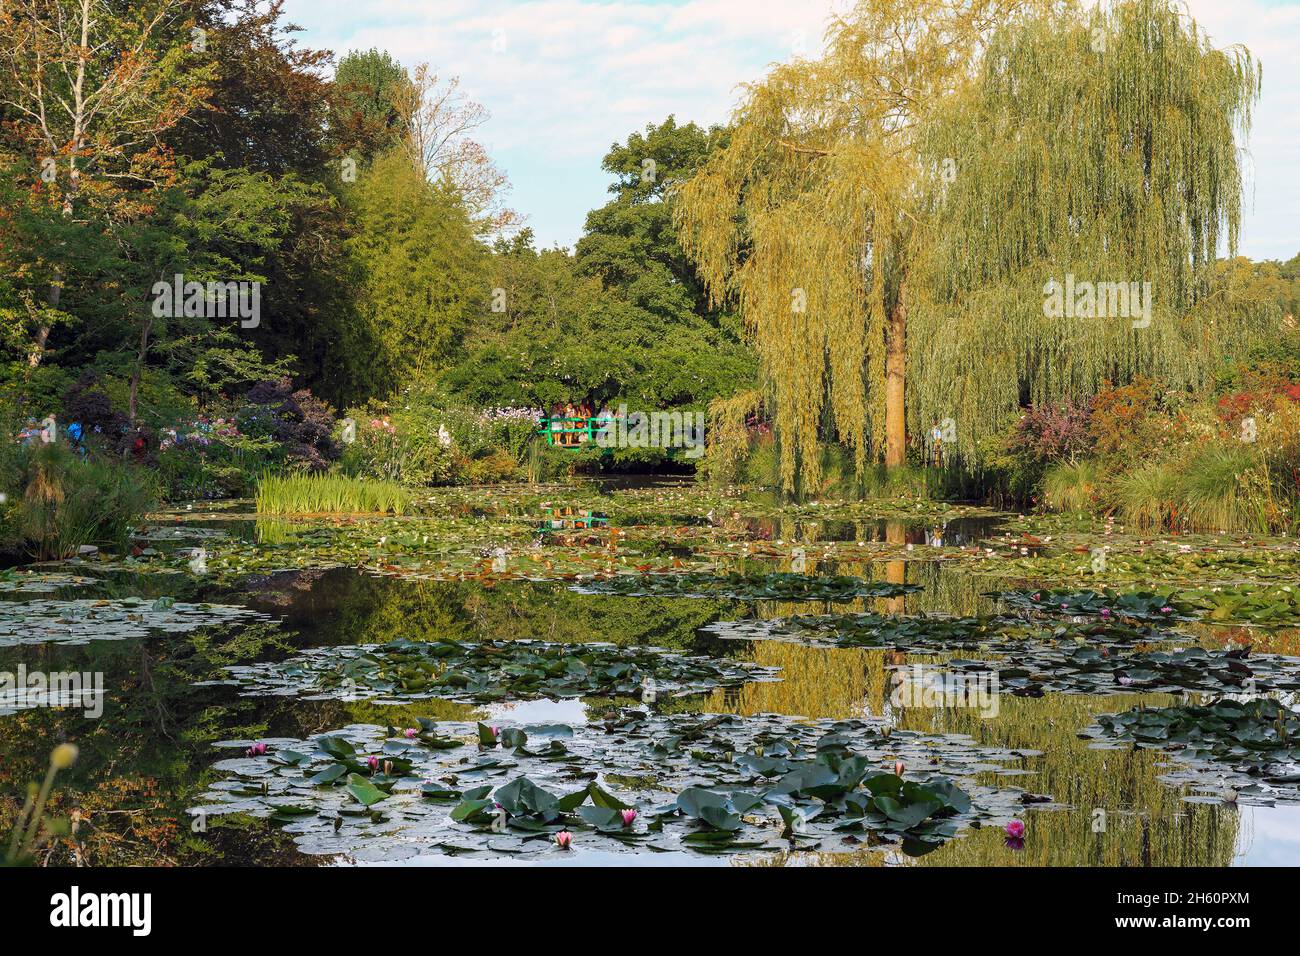 GIVERNY, FRANCE - 31 AOÛT 2019 : il s'agit d'un étang avec des nénuphars dans le jardin aquatique du domaine-musée de l'artiste impressionniste Claude Monet. Banque D'Images